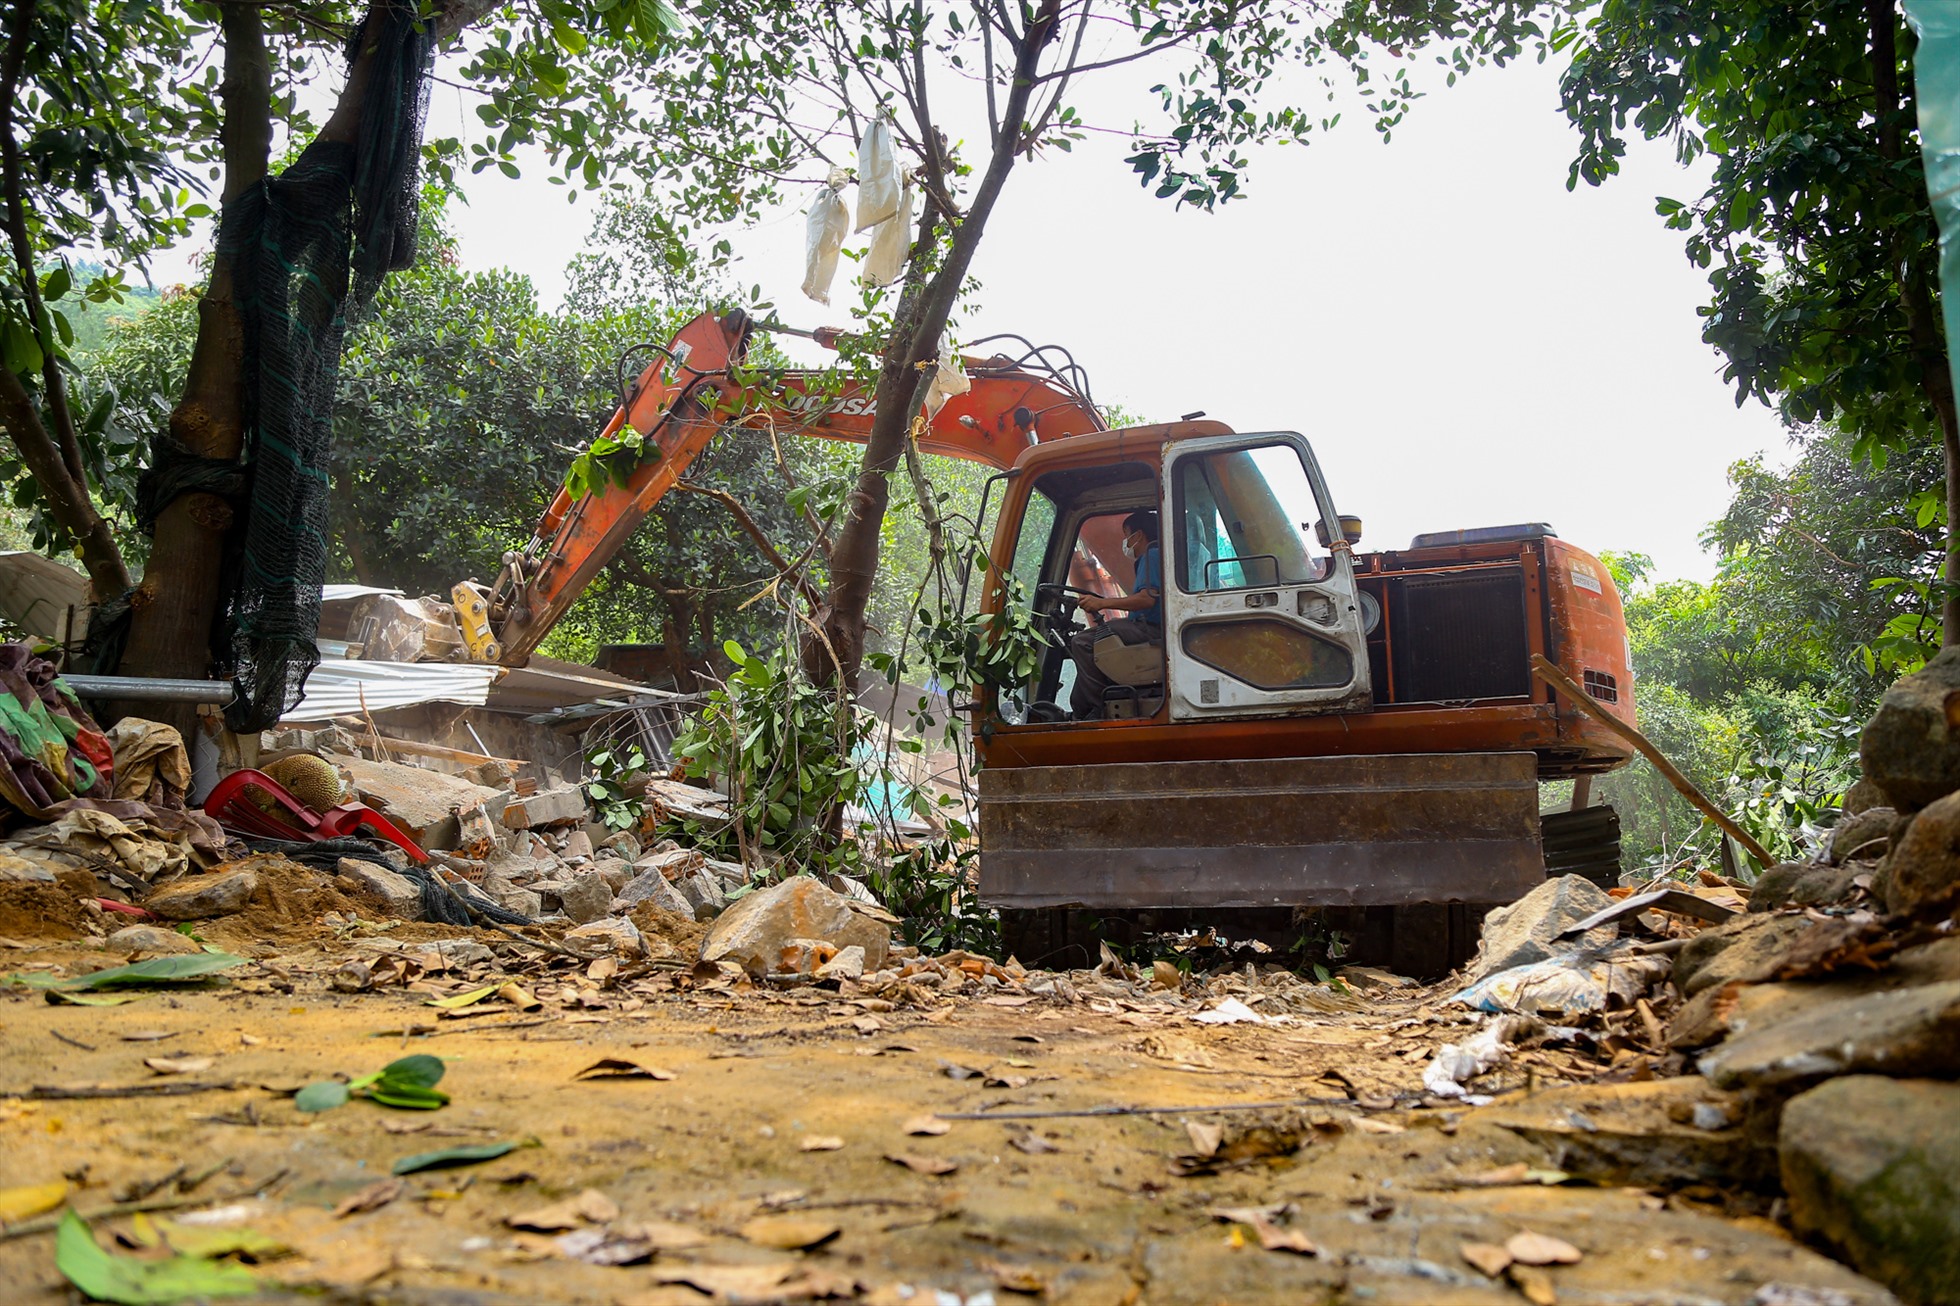 Theo thanh tra thành phố hiện nay bán đảo Sơn Trà còn 58 trường hợp vi phạm. UBND quận Sơn Trà đã đưa ra lộ trình cụ thể, phấn đấu đến năm 2025 sẽ  xử lý dứt điểm các công trình này.